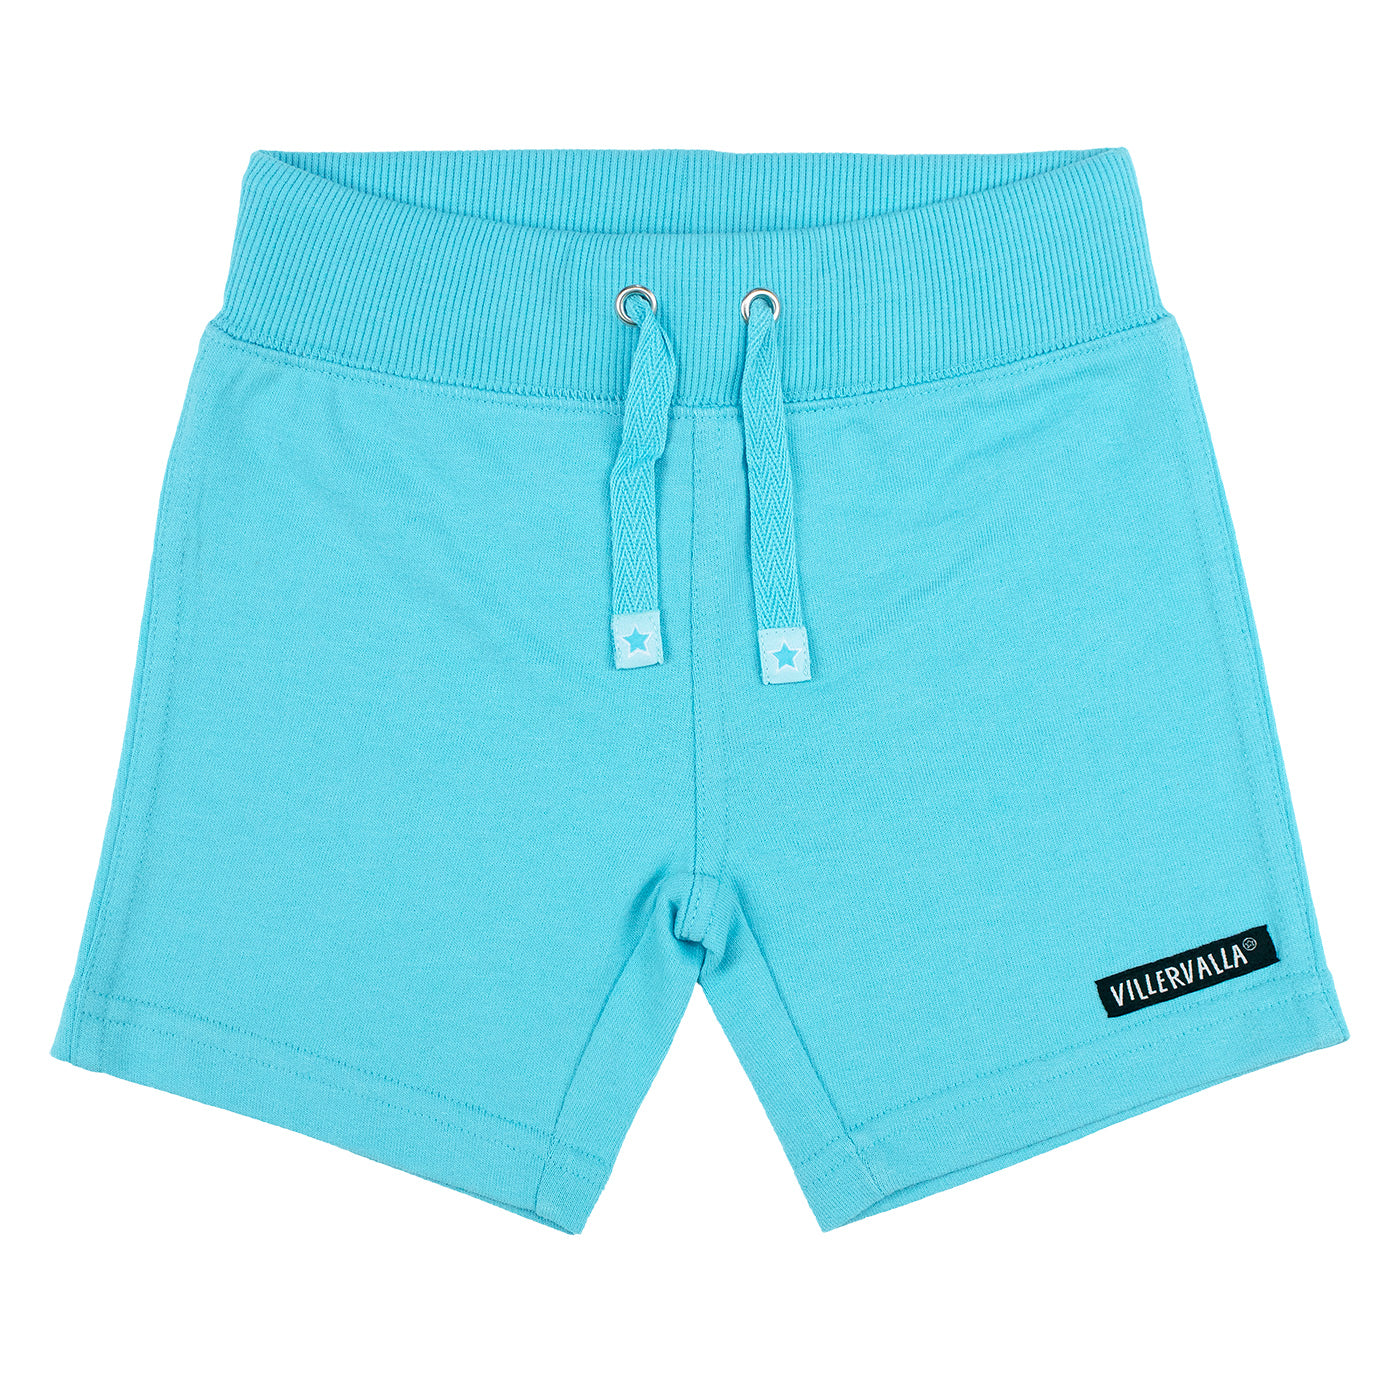 Villervalla - Basics - Relaxed Shorts - Aruba